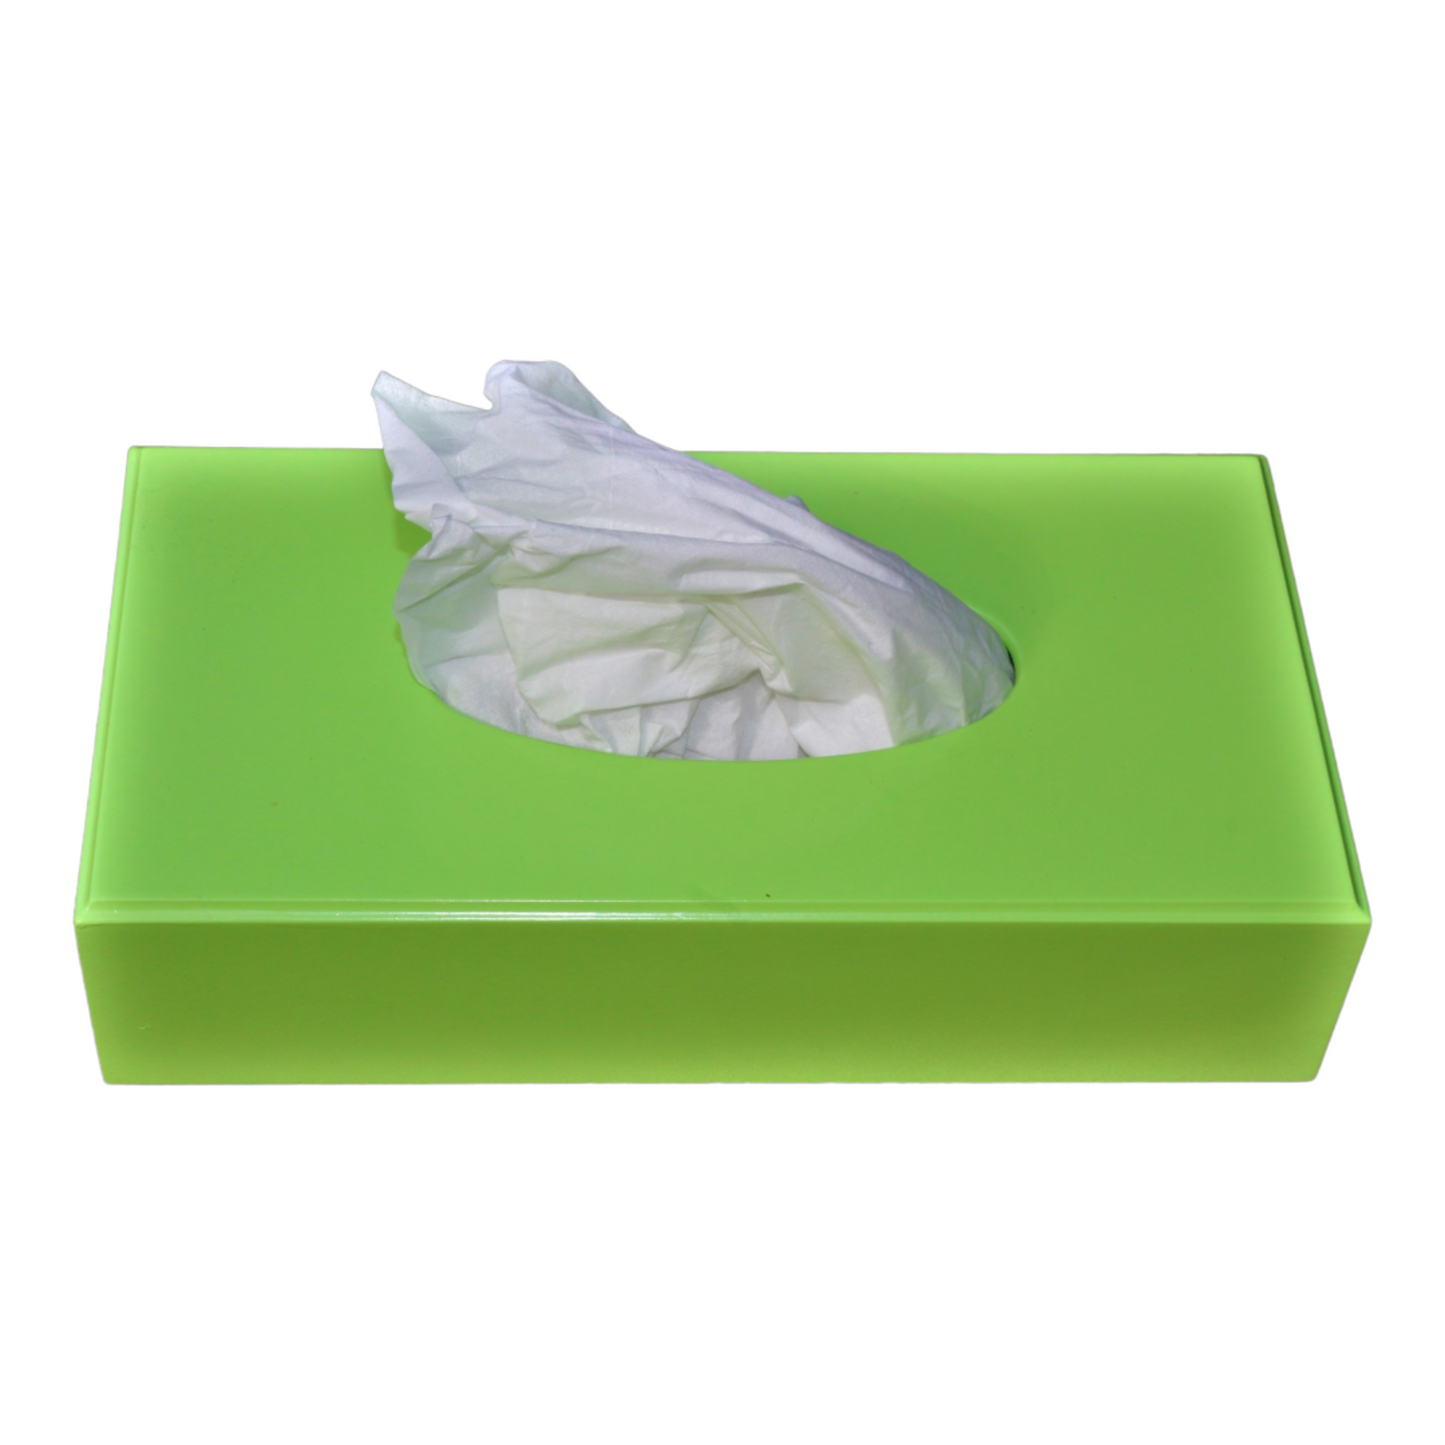 Rectangular Tissue Box Cover: Lime Green